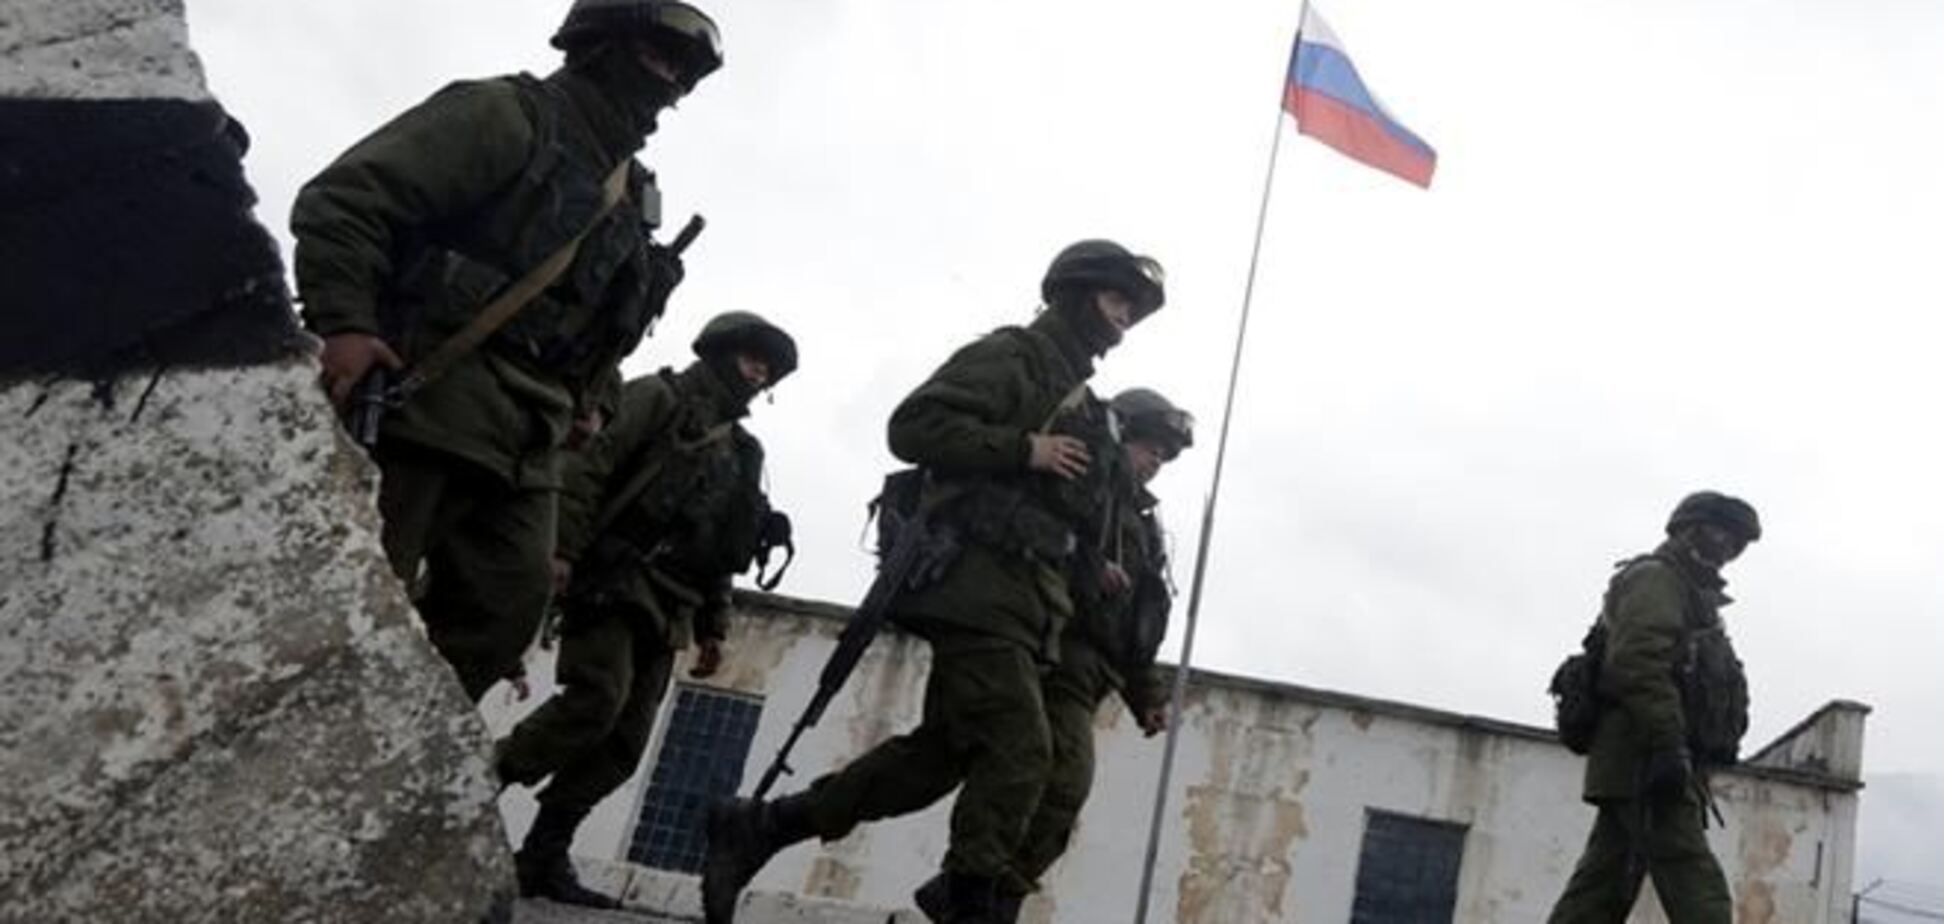 Военные РФ захватили отдел погранслужбы 'Черноморское' - журналист